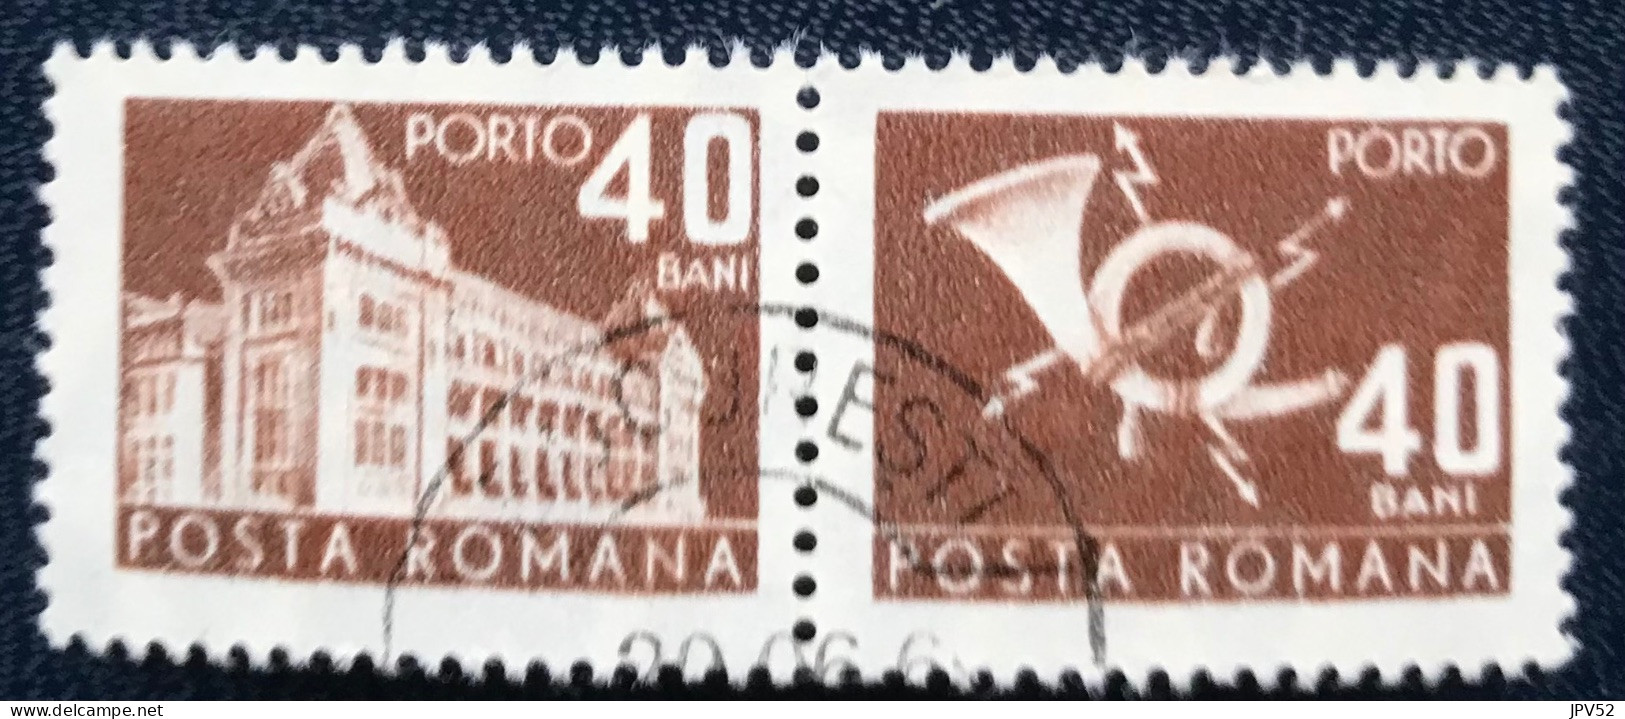 Romana - Roemenië - C14/54 - 1967 - (°)used - Michel 111 - Postkantoor & Posthoorn & Bliksem - Impuestos